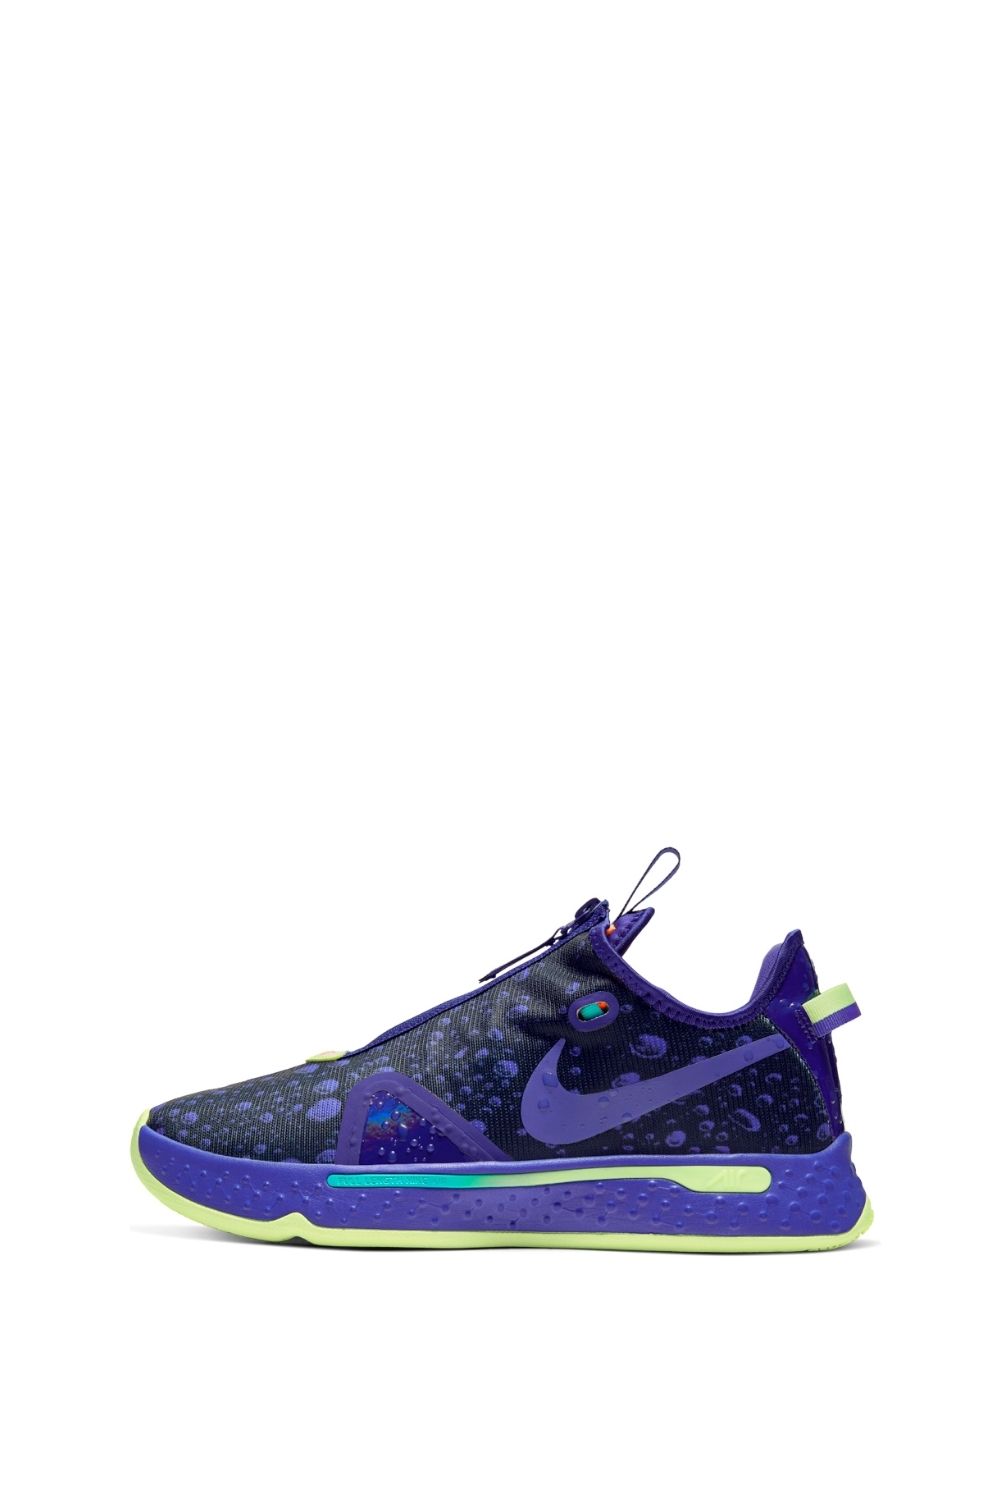 NIKE - Ανδρικά παπούτσια basketball NIKE PG 4 G μοβ Ανδρικά/Παπούτσια/Αθλητικά/Basketball